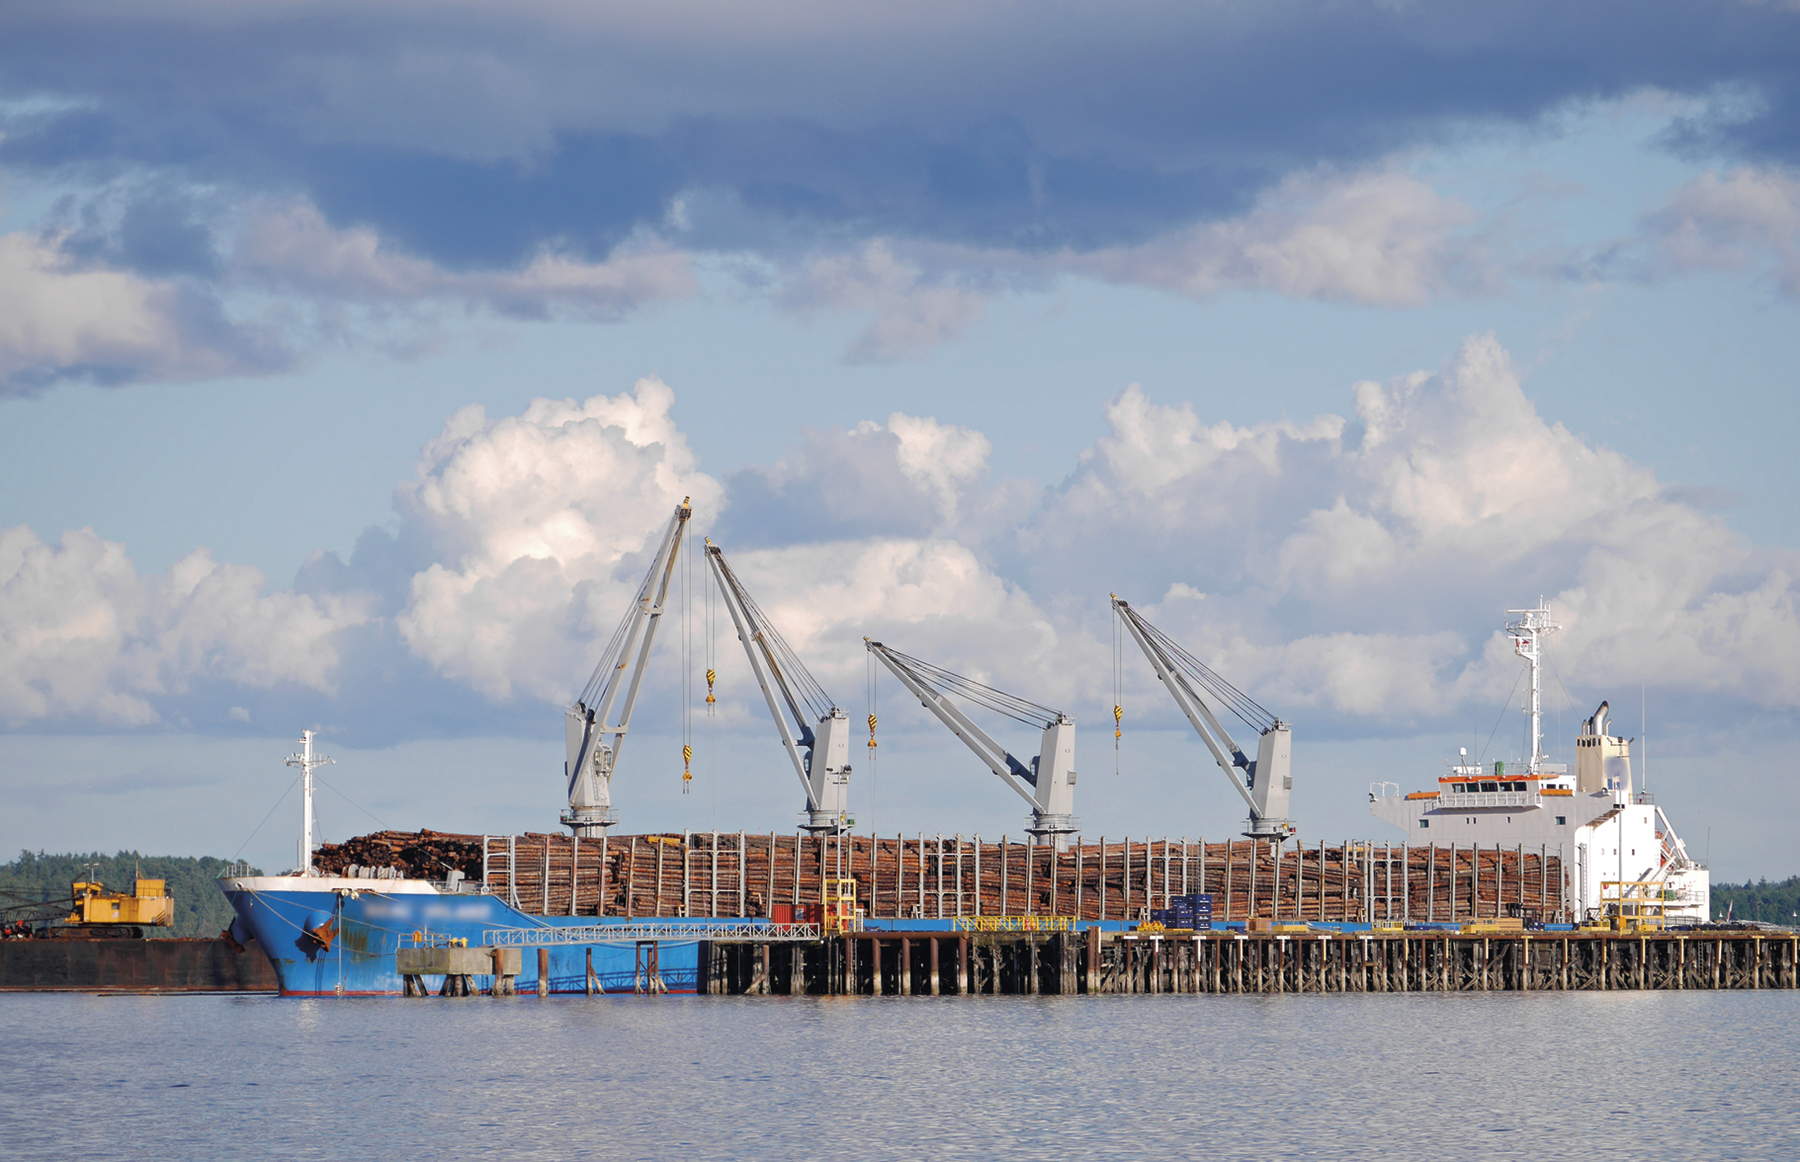 Fotografia. Um navio carregado de troncos de madeira ancorado em um porto. Há gruas manipulando as cargas.